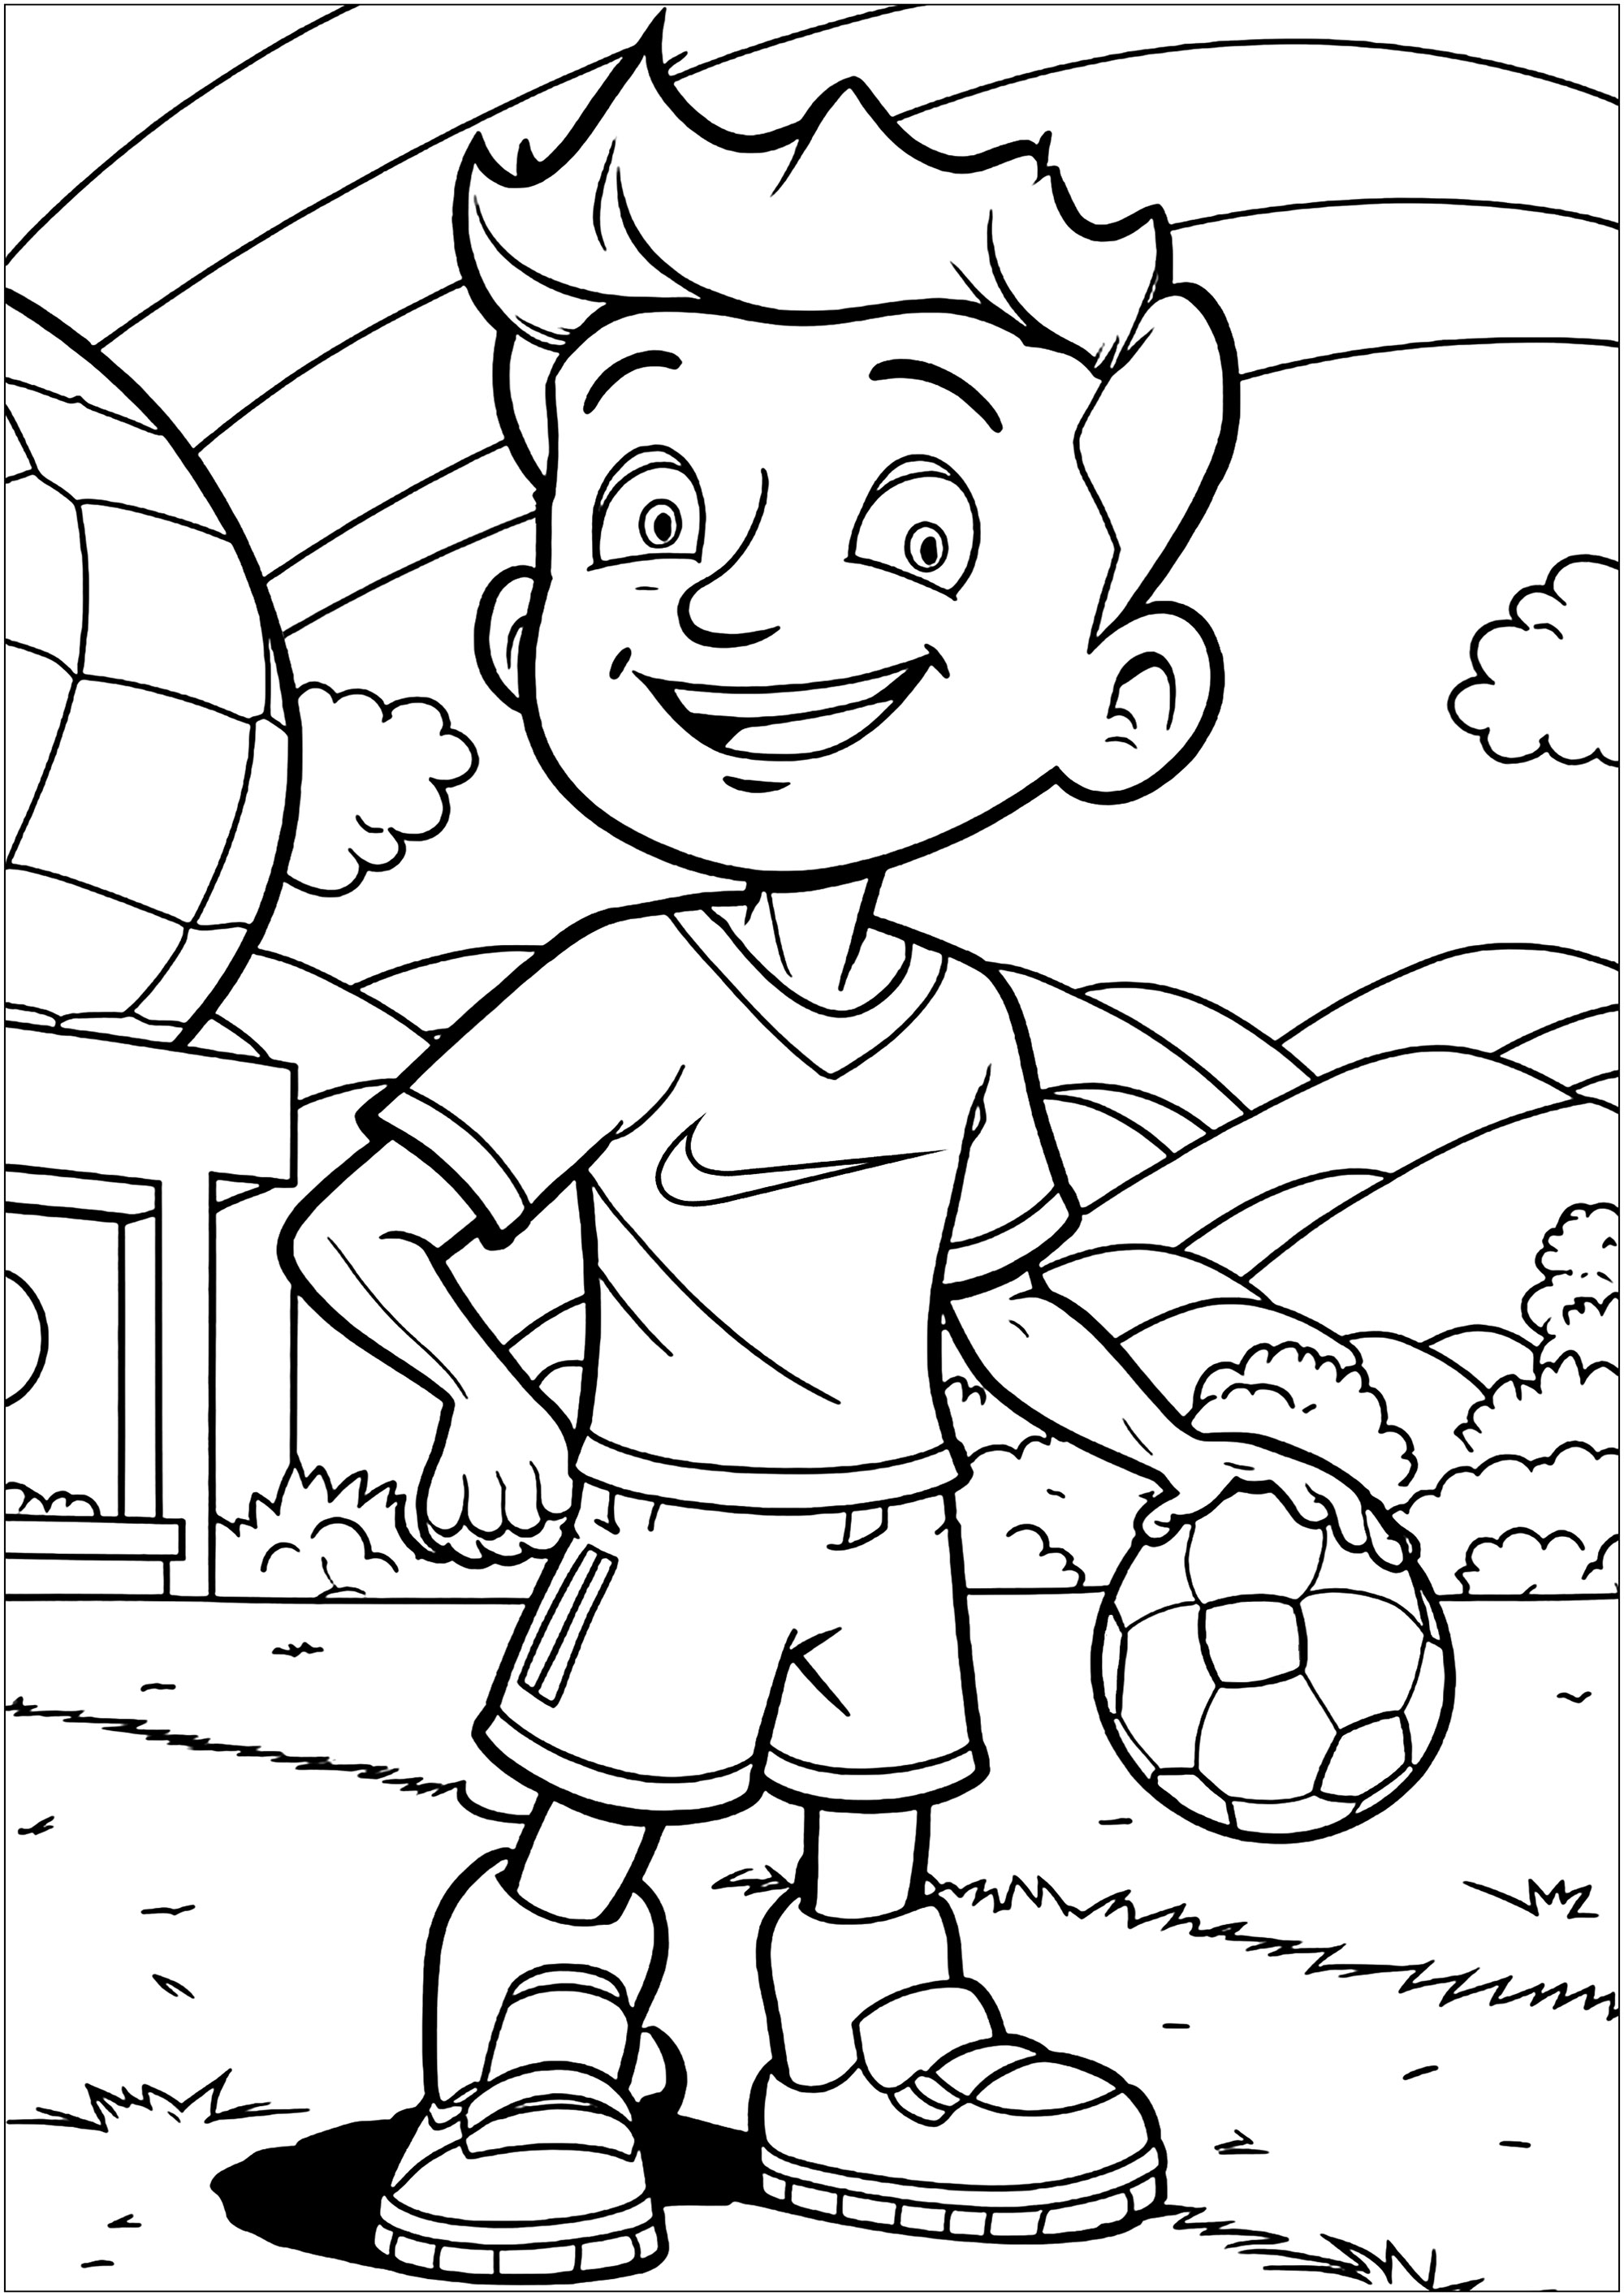 Coloração de um jovem futebolista no seu campo. Os pequenos artistas podem divertir-se a escolher cores para a camisola Futeboleur, o belo logotipo da Nike, a bola e o campo.
